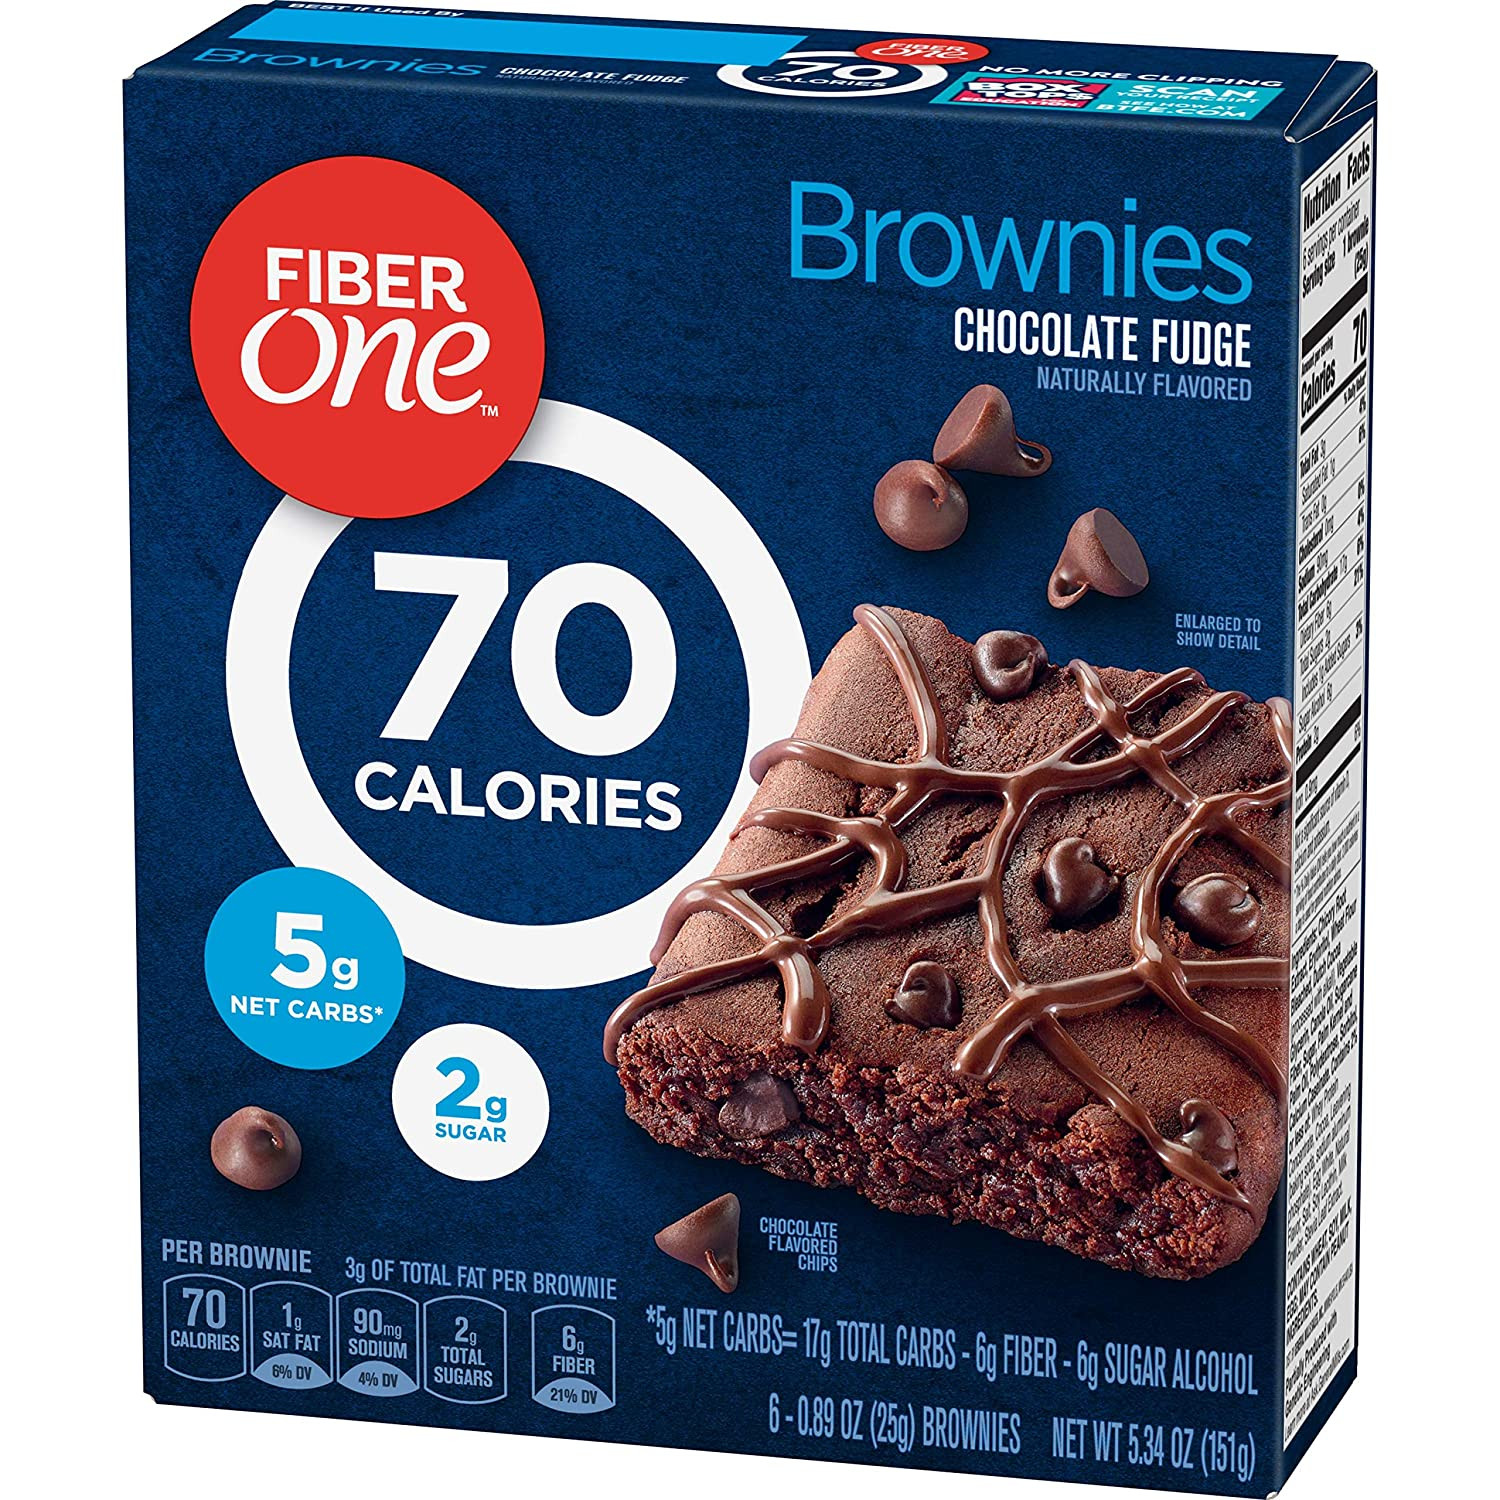 Fiber One Brownies Reviews
 Fiber e Brownie Chocolate Fudge 0 89oz 6 Count 5 32oz